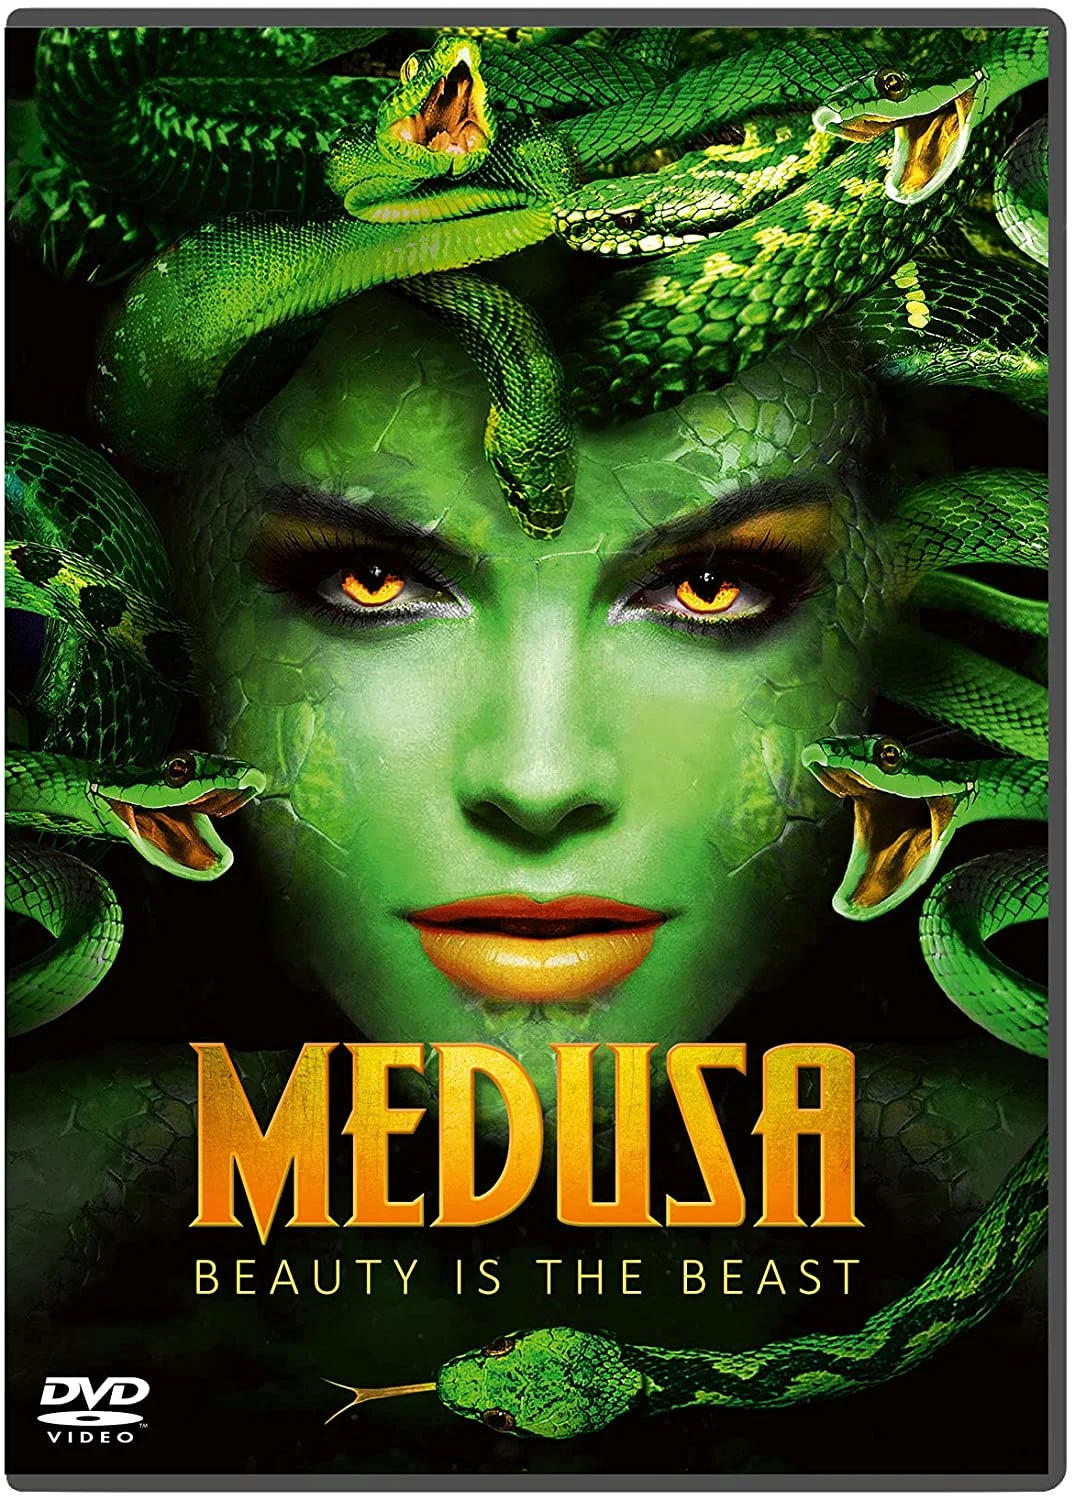 Medusa (DVD) on MovieShack